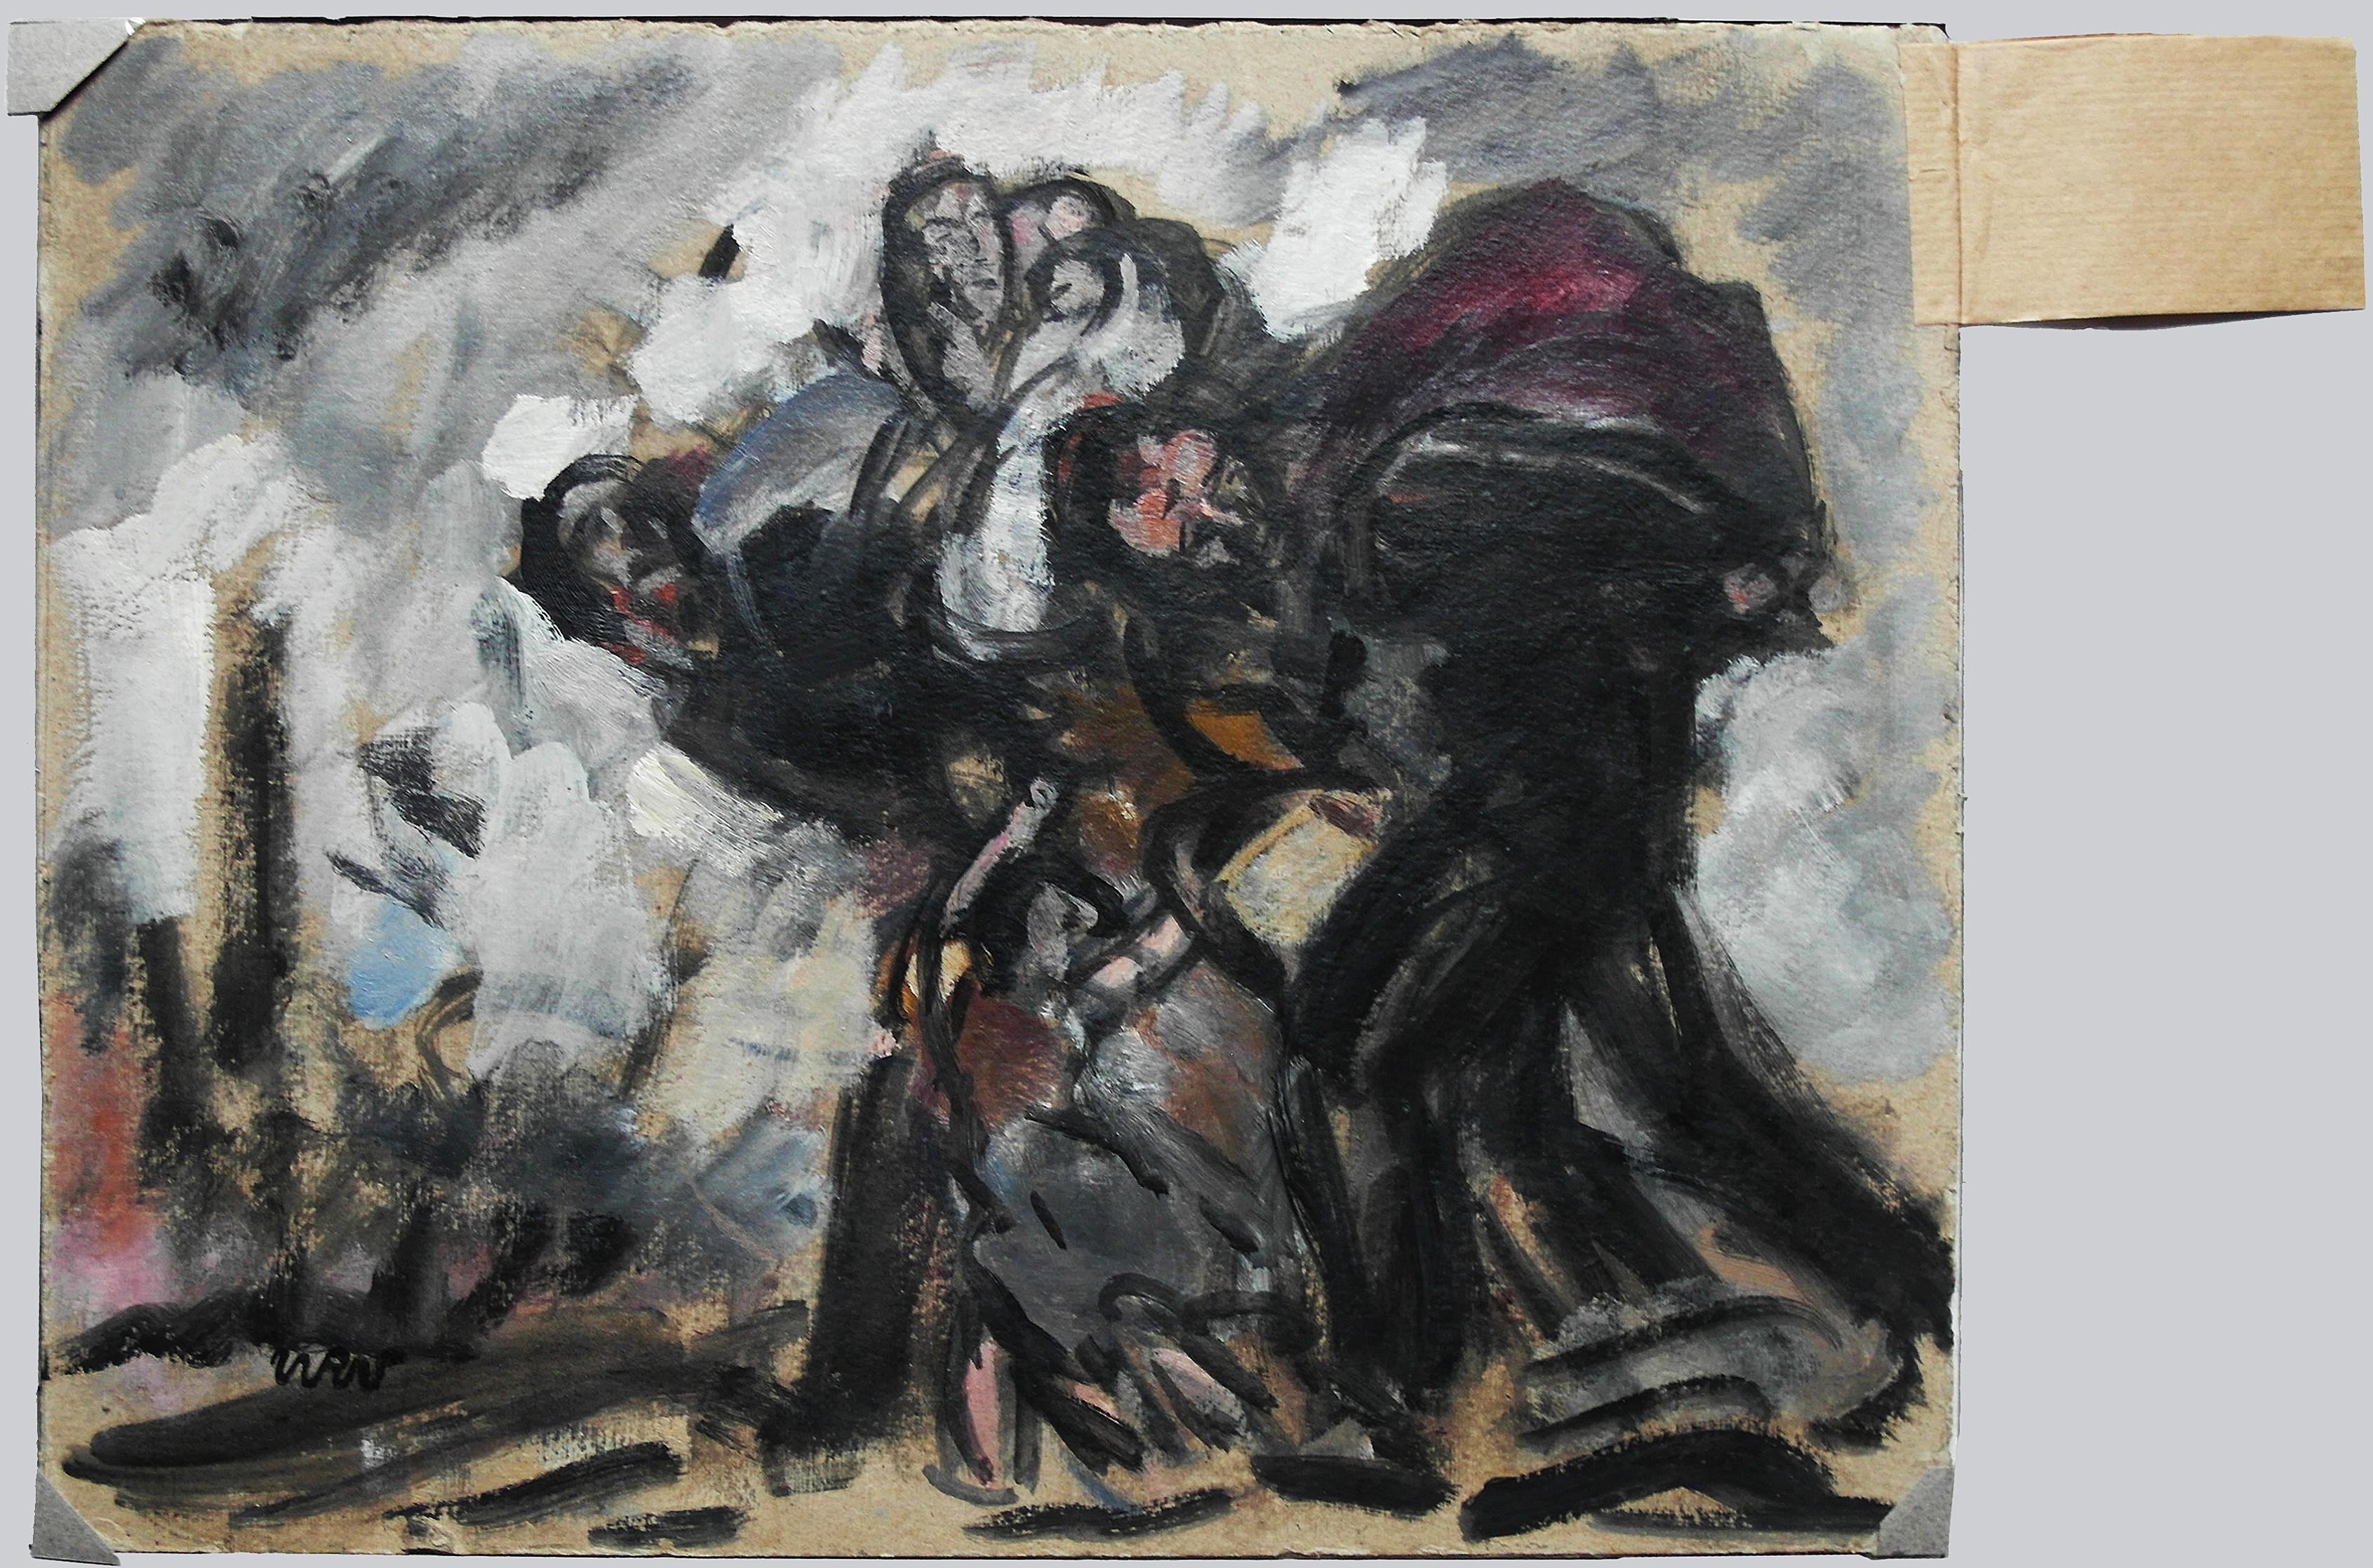 Na obrazie widzimy obraz Wojciecha Weissa "Wygnanie"